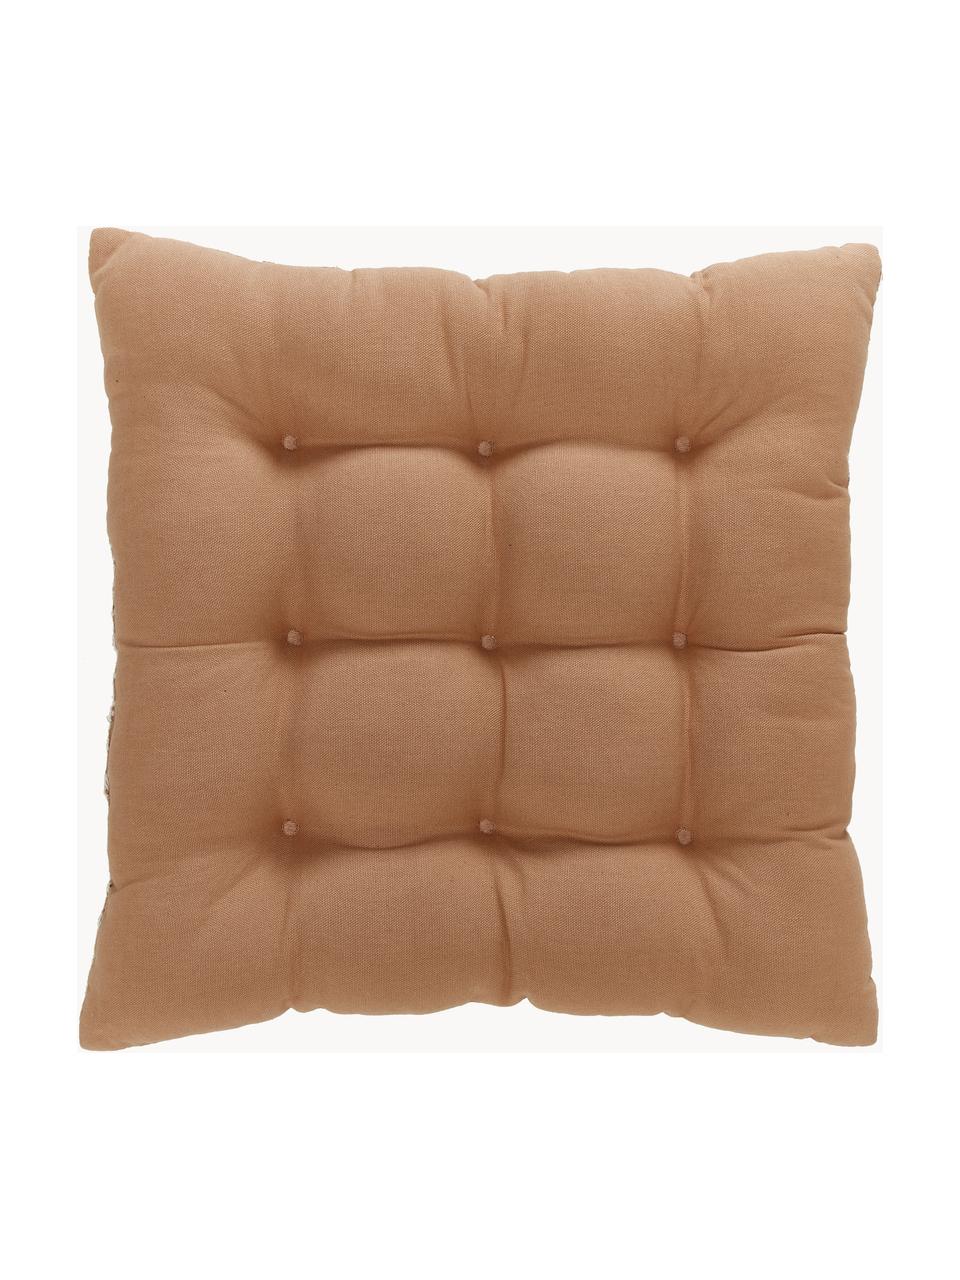 Cuscino sedia in cotone Blaki, Rivestimento: 100% cotone, Marrone, crema, Larg. 40 x Lung. 40 cm